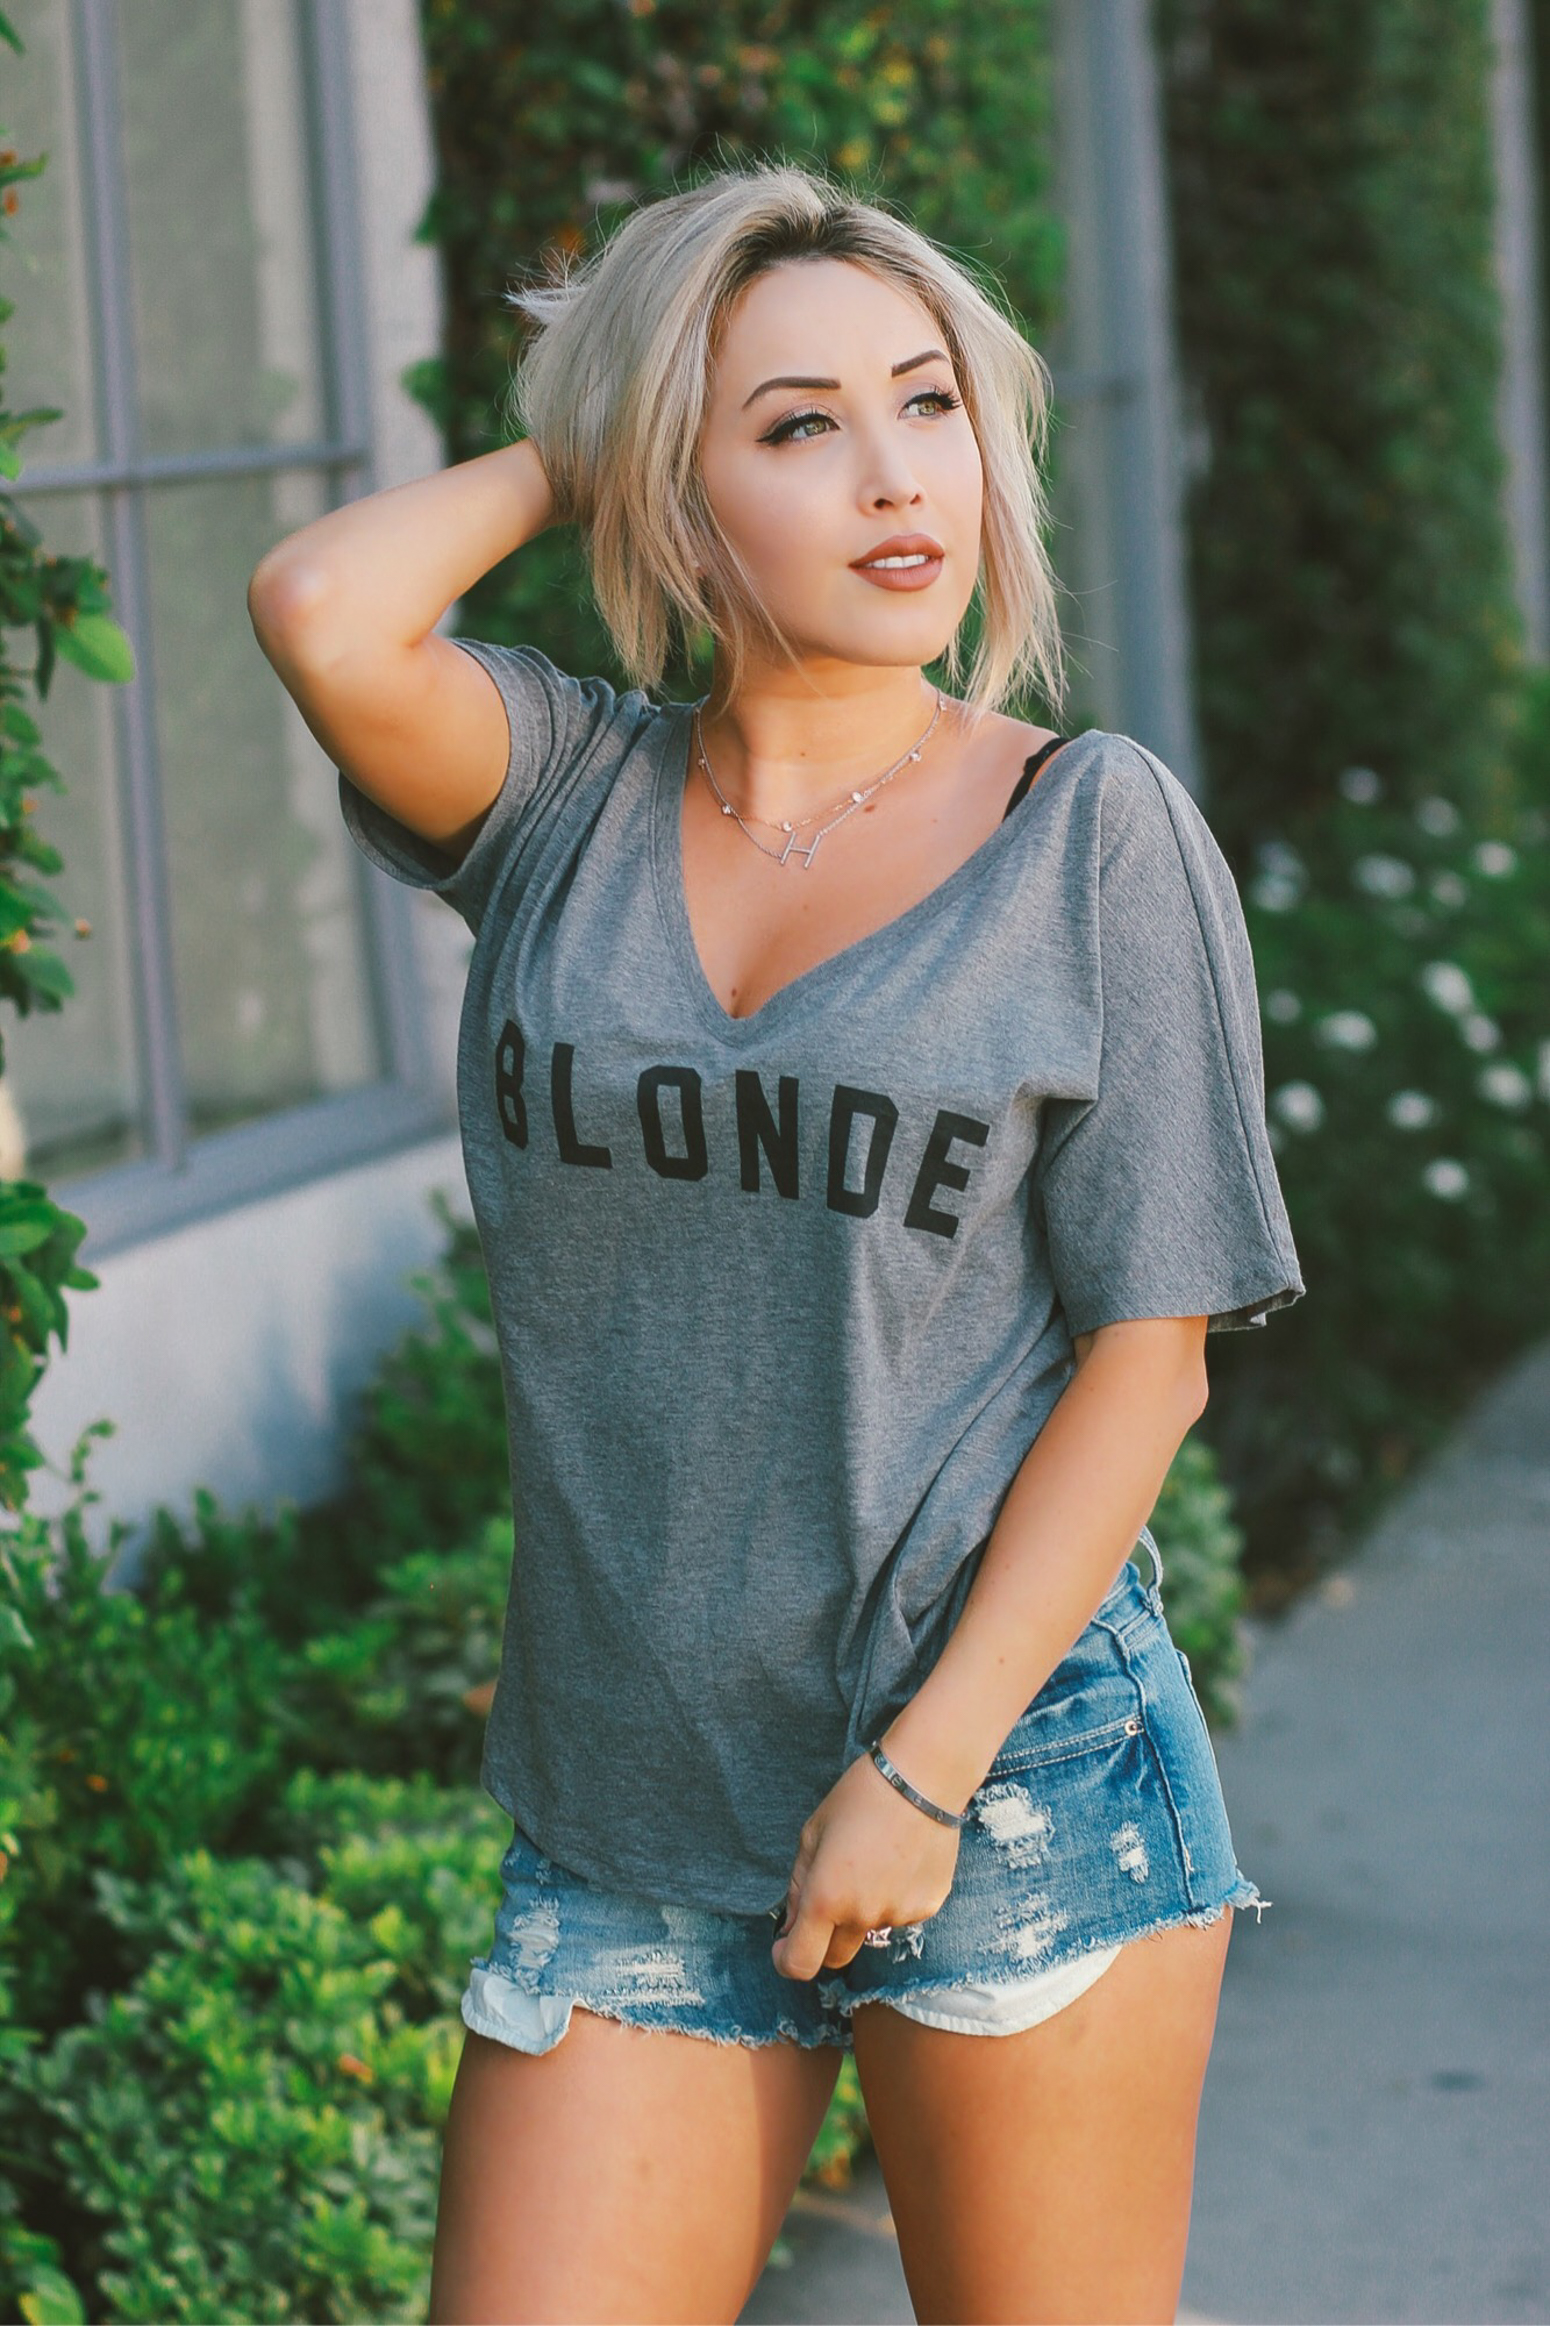 Blondie in the City | Blonde, Brunette, & Ginger Tee's | Cute Girly Tee